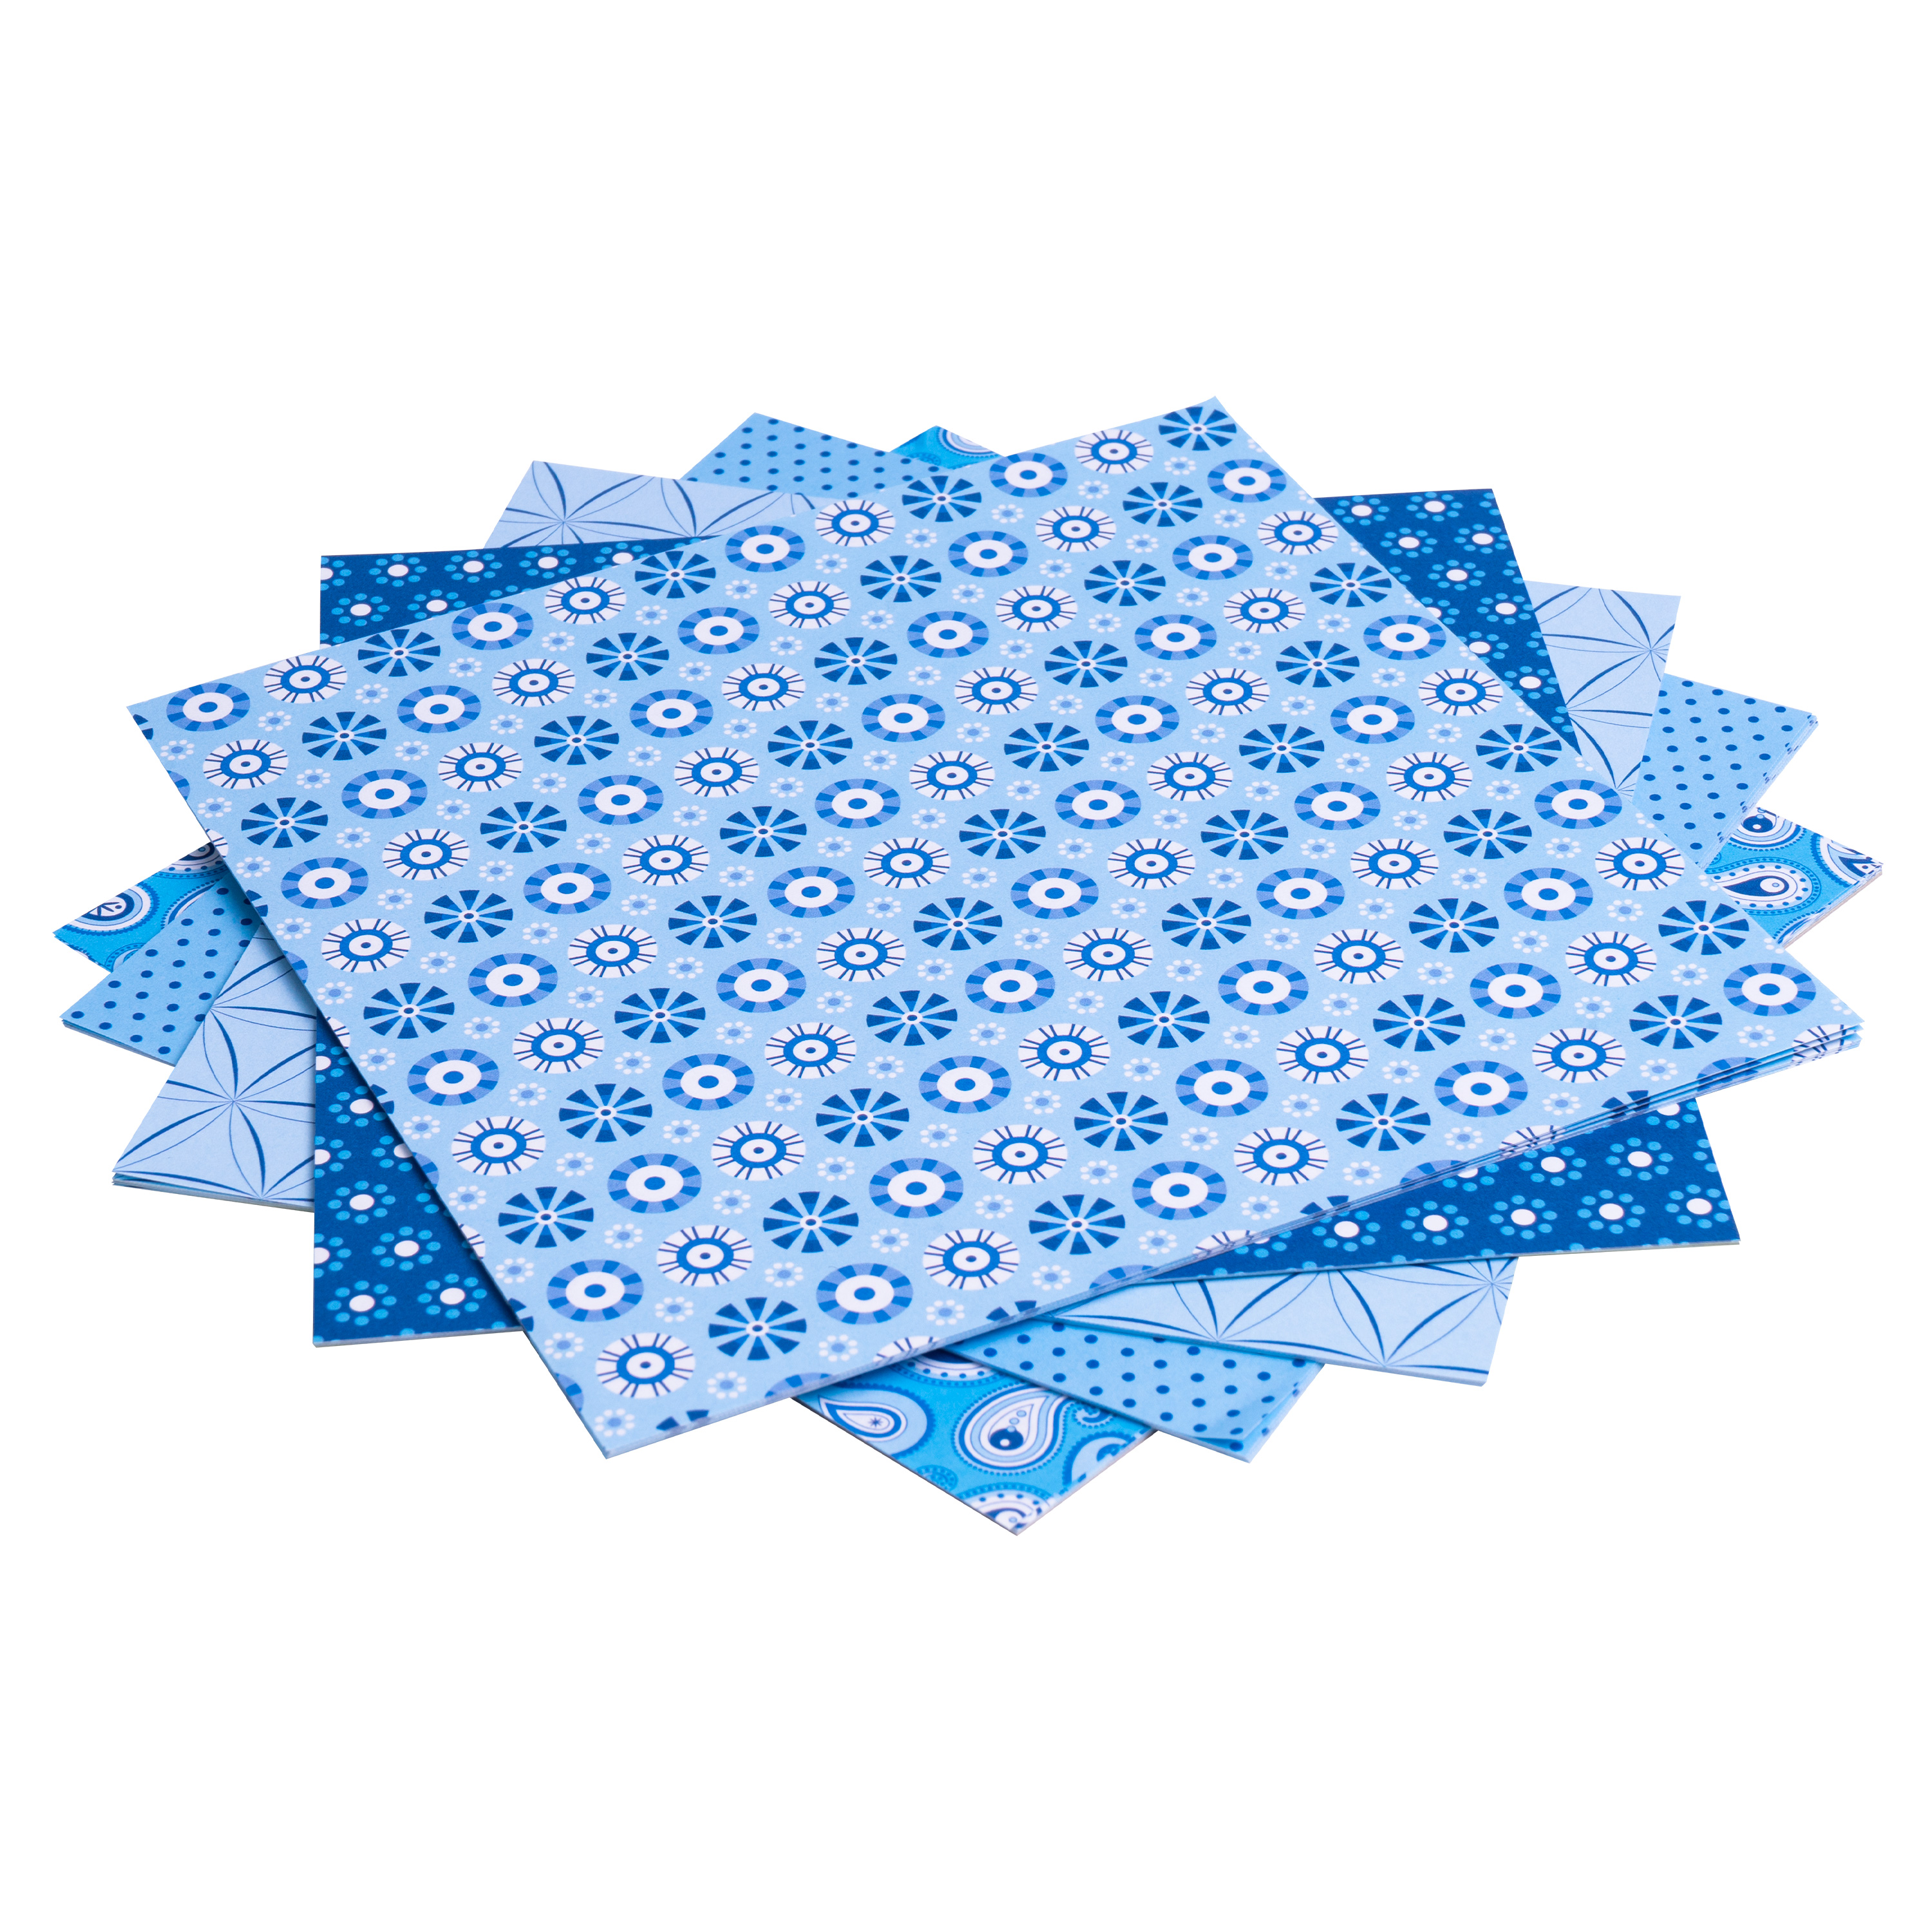 Origami Motiv-Faltblätter 'Basics', 15 x 15 cm, blau